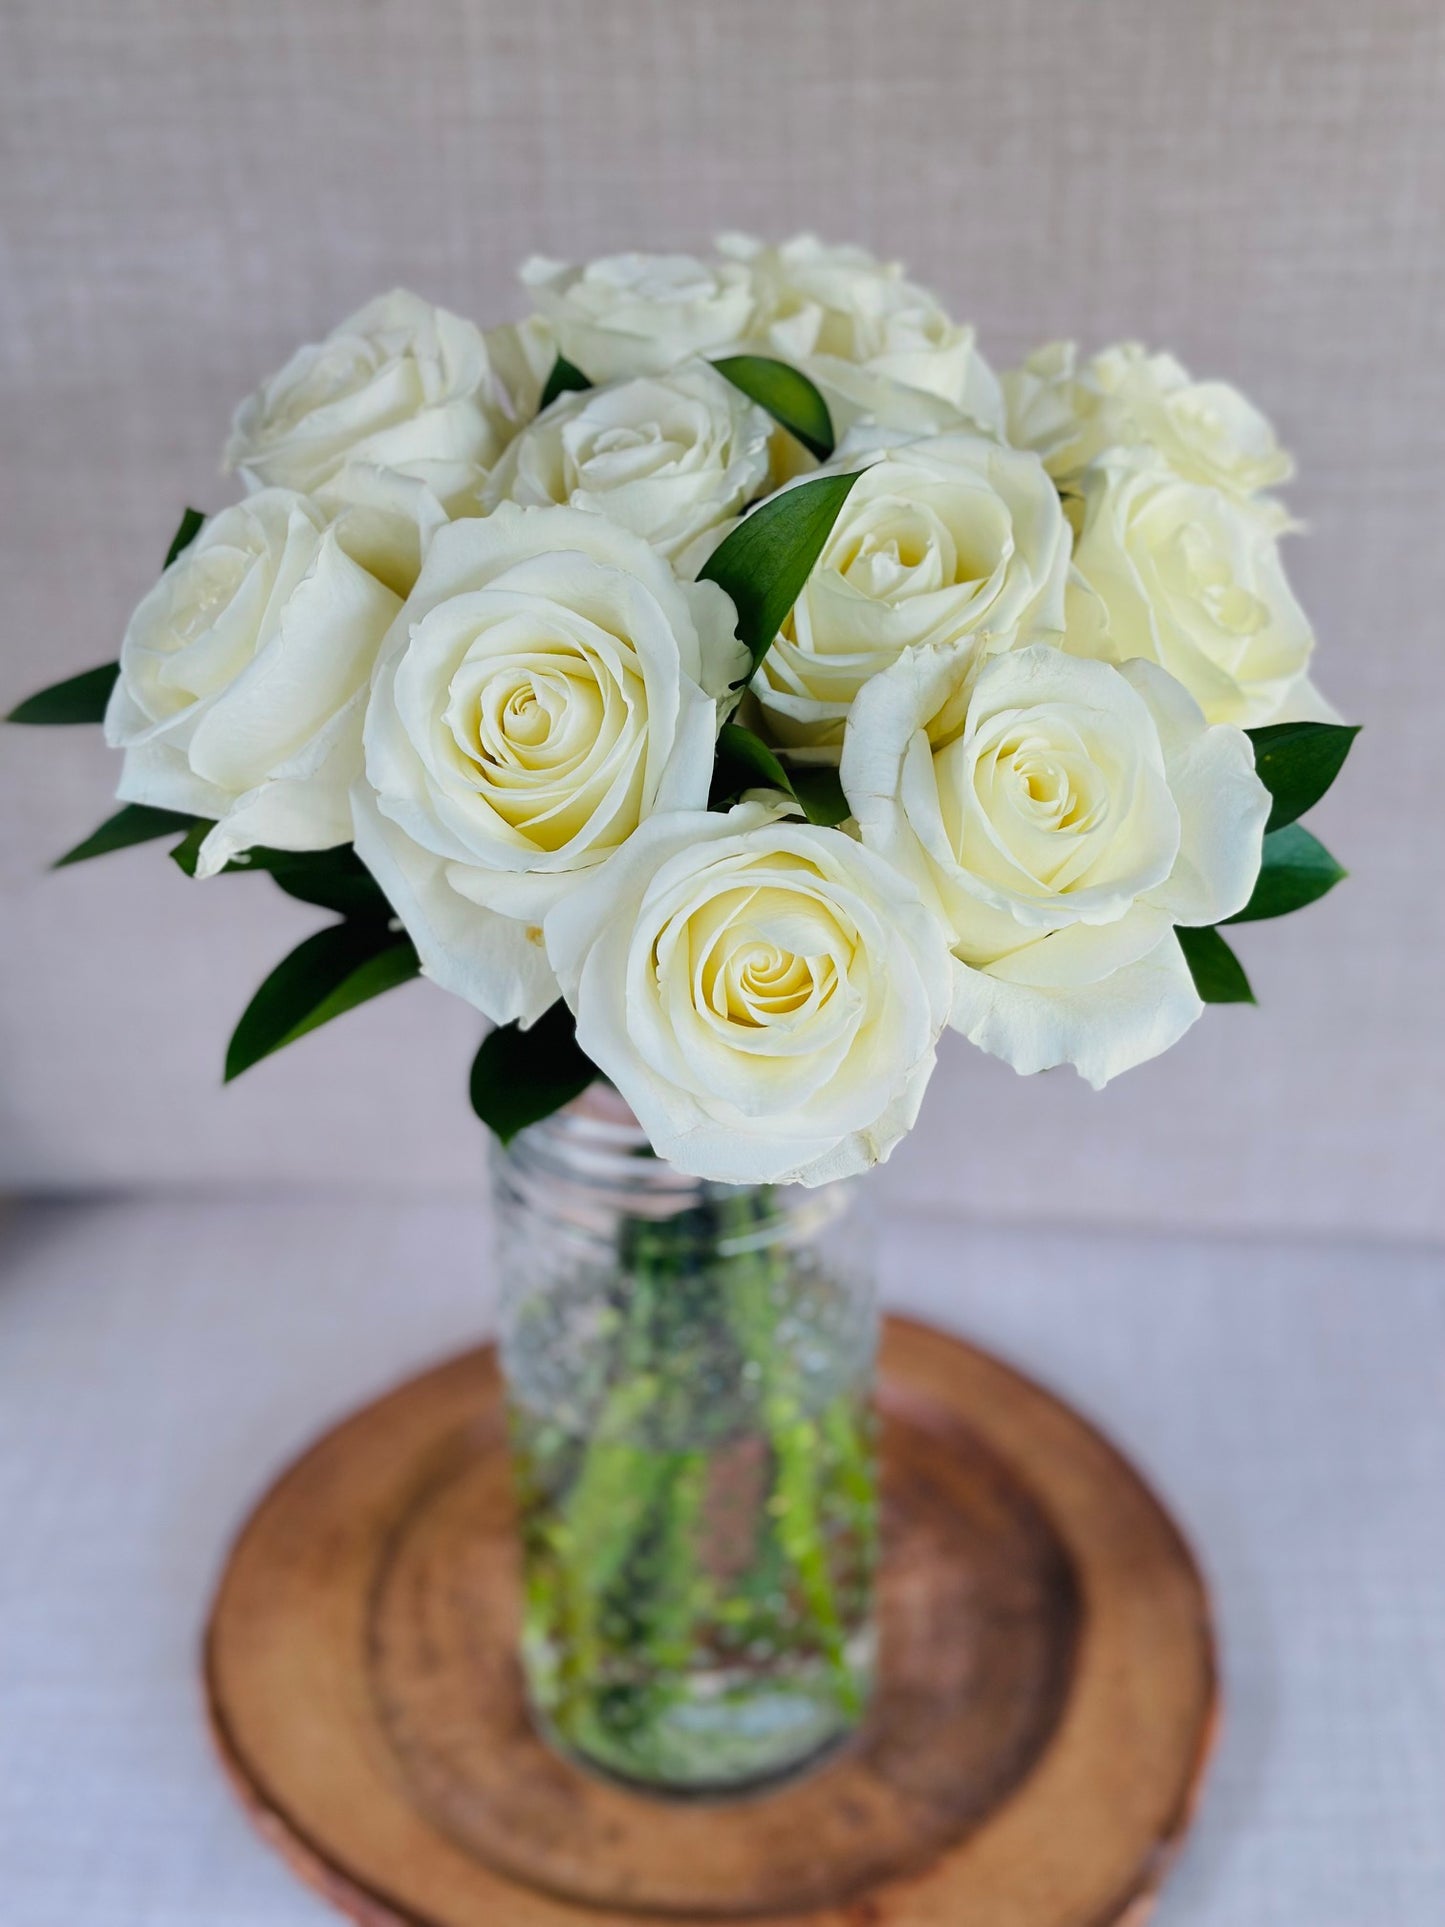 Roses - White